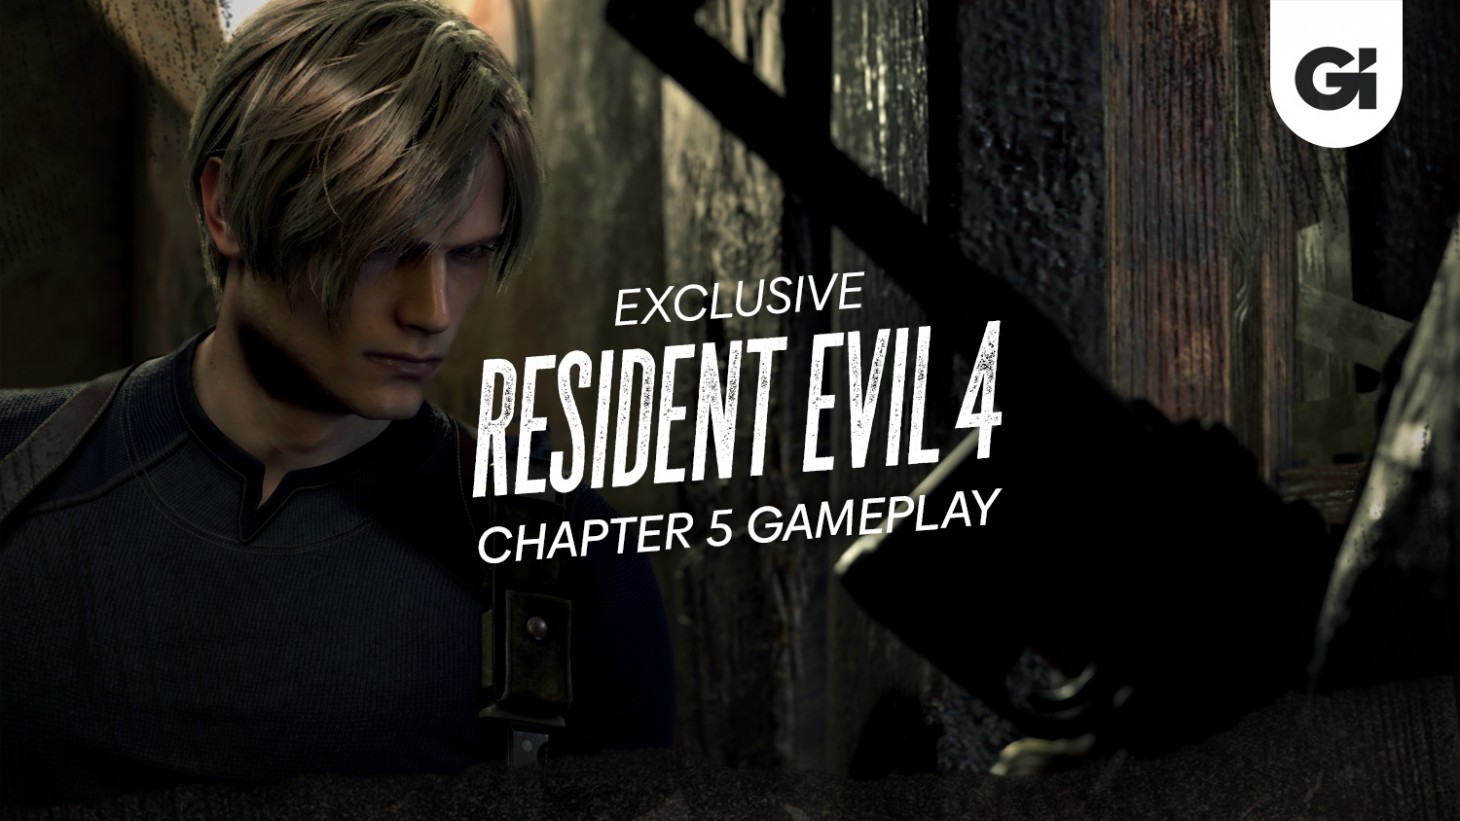 Resident Evil 4 Remake Team Talks Using PS5 To The Fullest - Gameranx